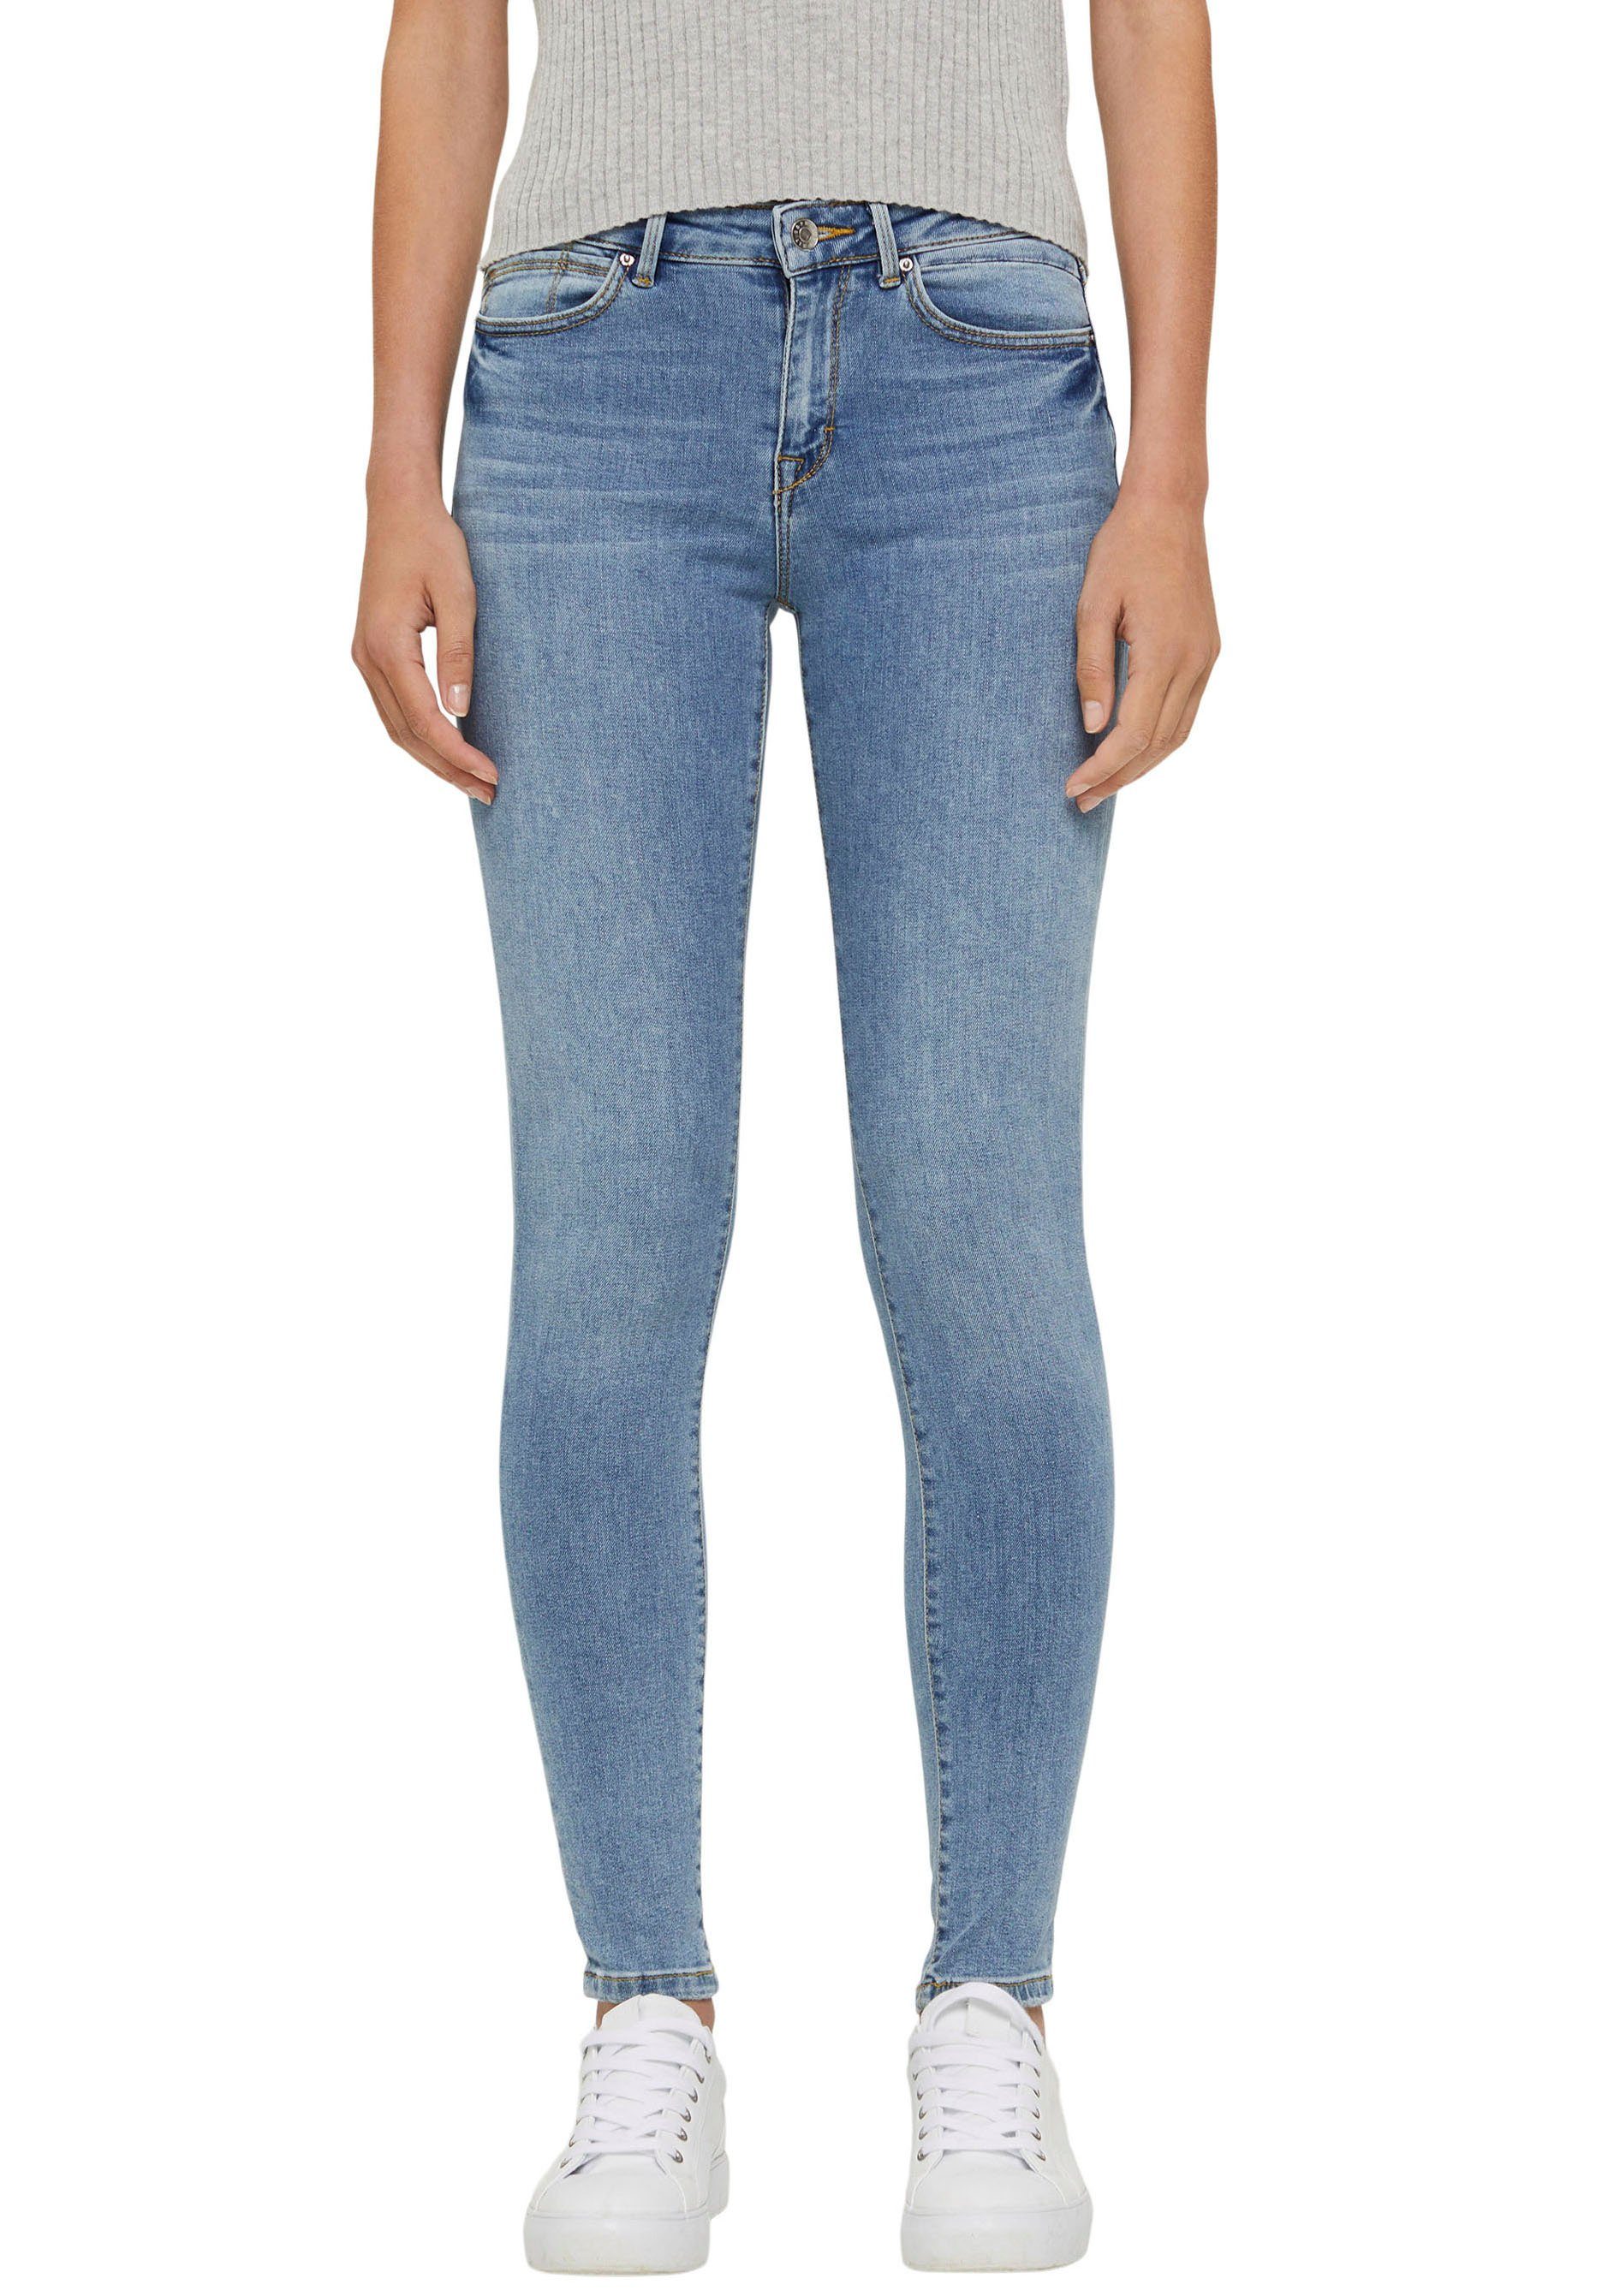 Esprit Skinny-fit-Jeans mit Stretch Komfort kaufen | OTTO